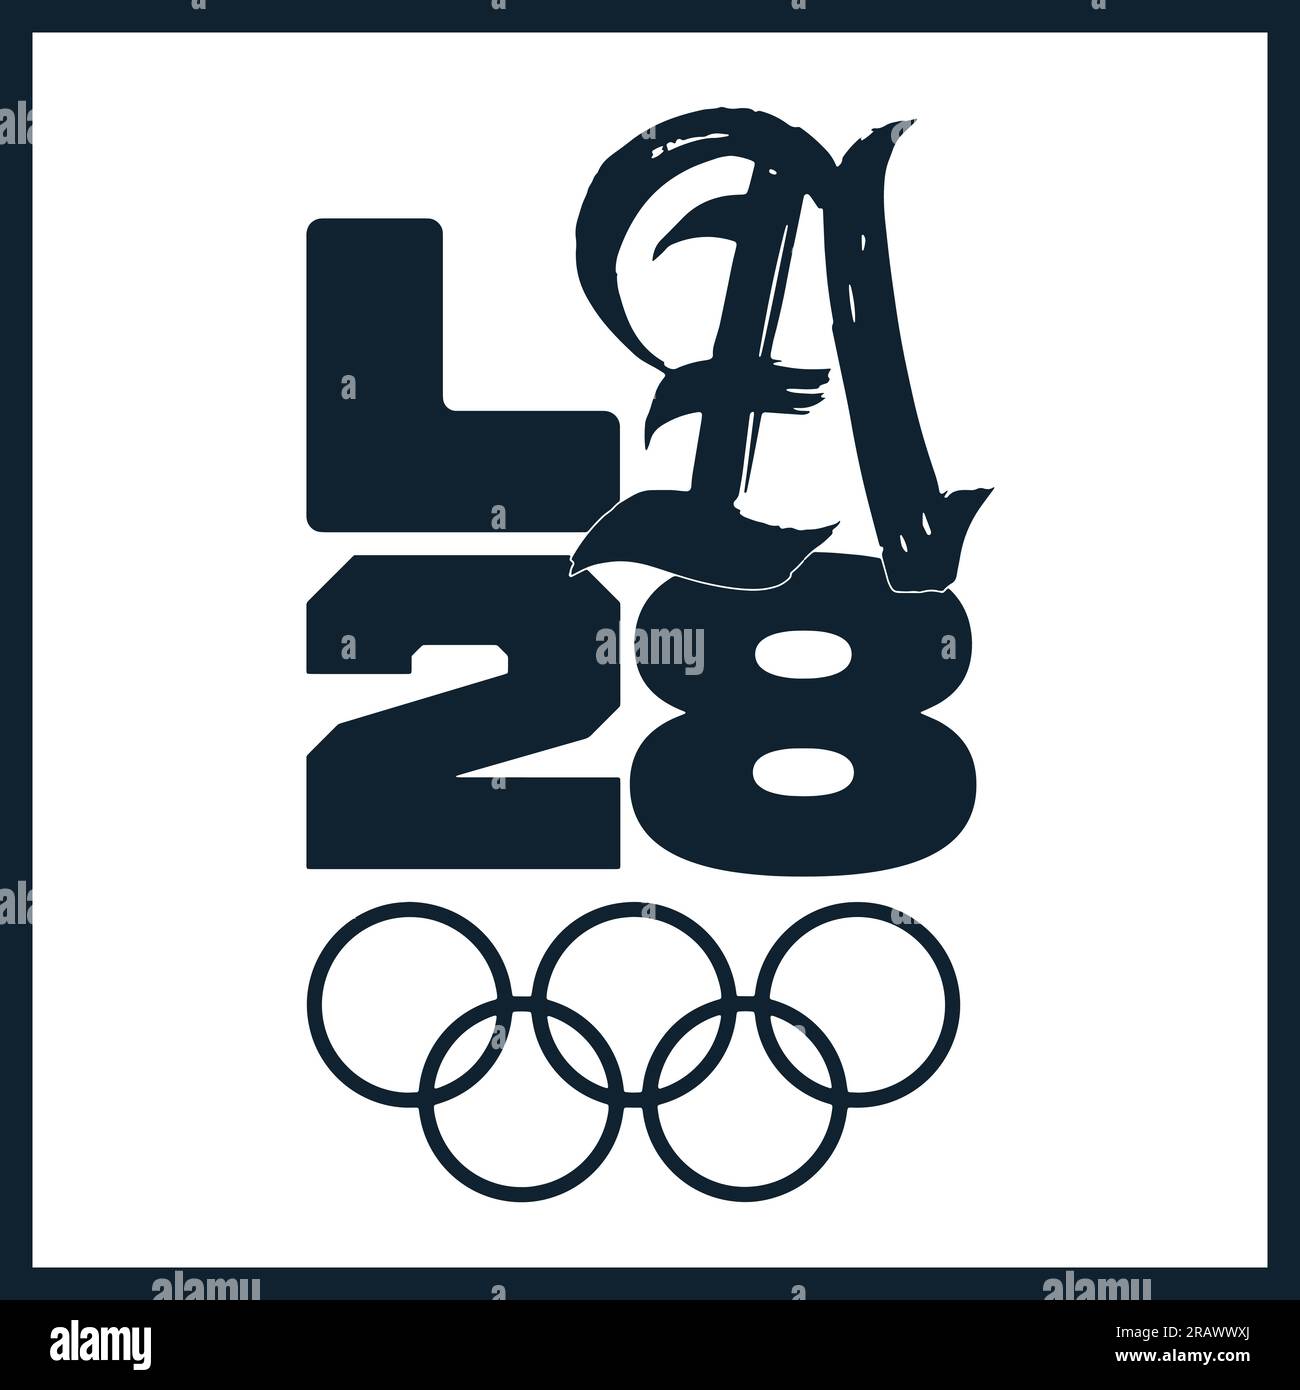 Logotipo para los Juegos Olímpicos de Verano 2028 en EE.UU. (Los Ángeles 2028) y fondo azul oscuro, ilustración vectorial Resumen Imagen editable Ilustración del Vector